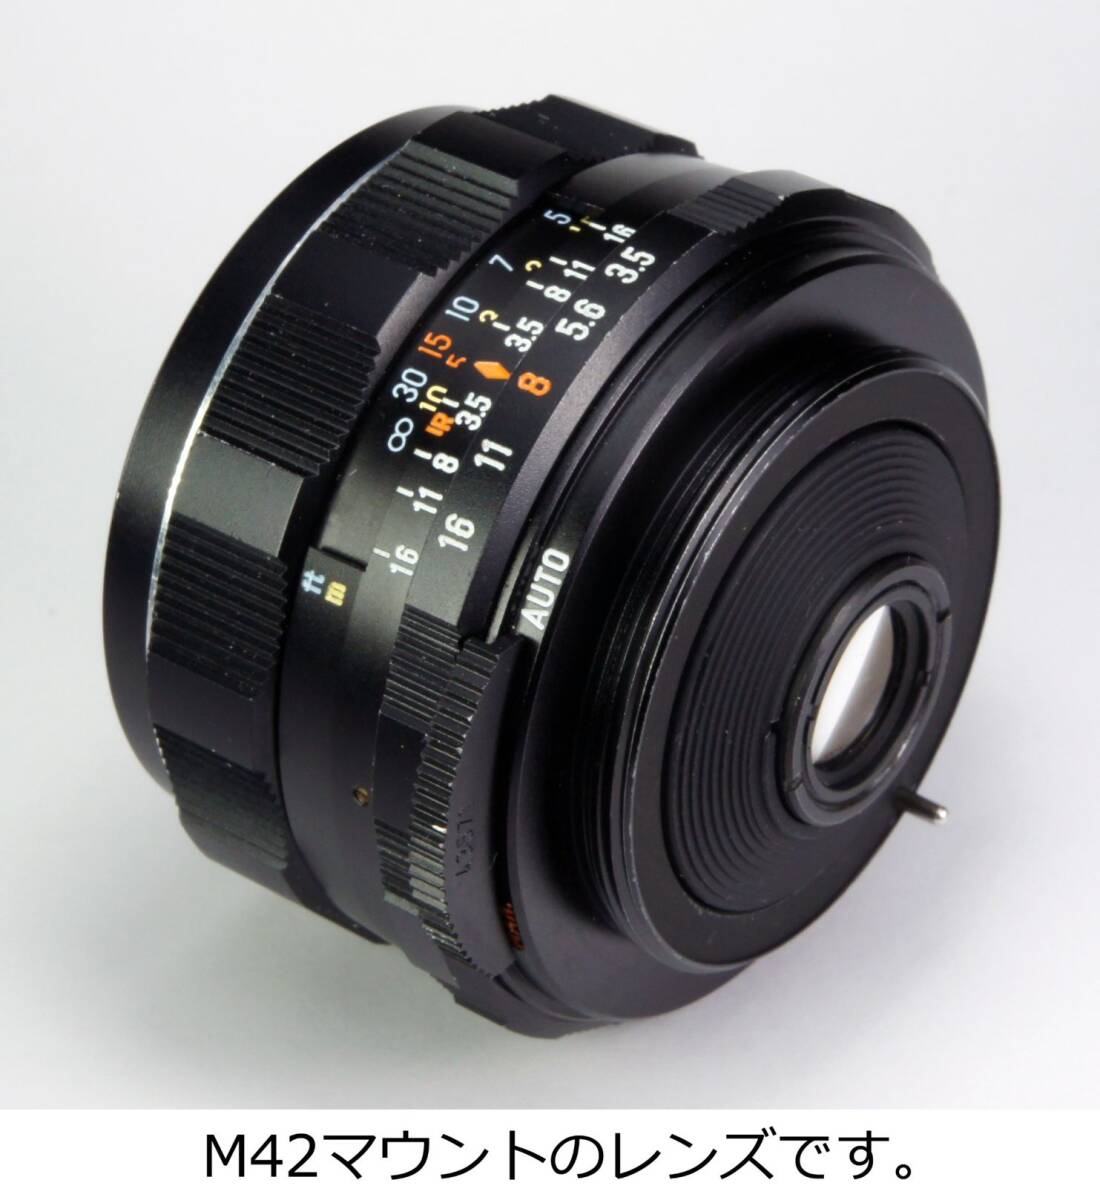 分解整備・実写確認済 Super-Takumar 35mm F3.5 クリアな広角描写を楽しむことができるオールドレンズ【送料410円】_画像6